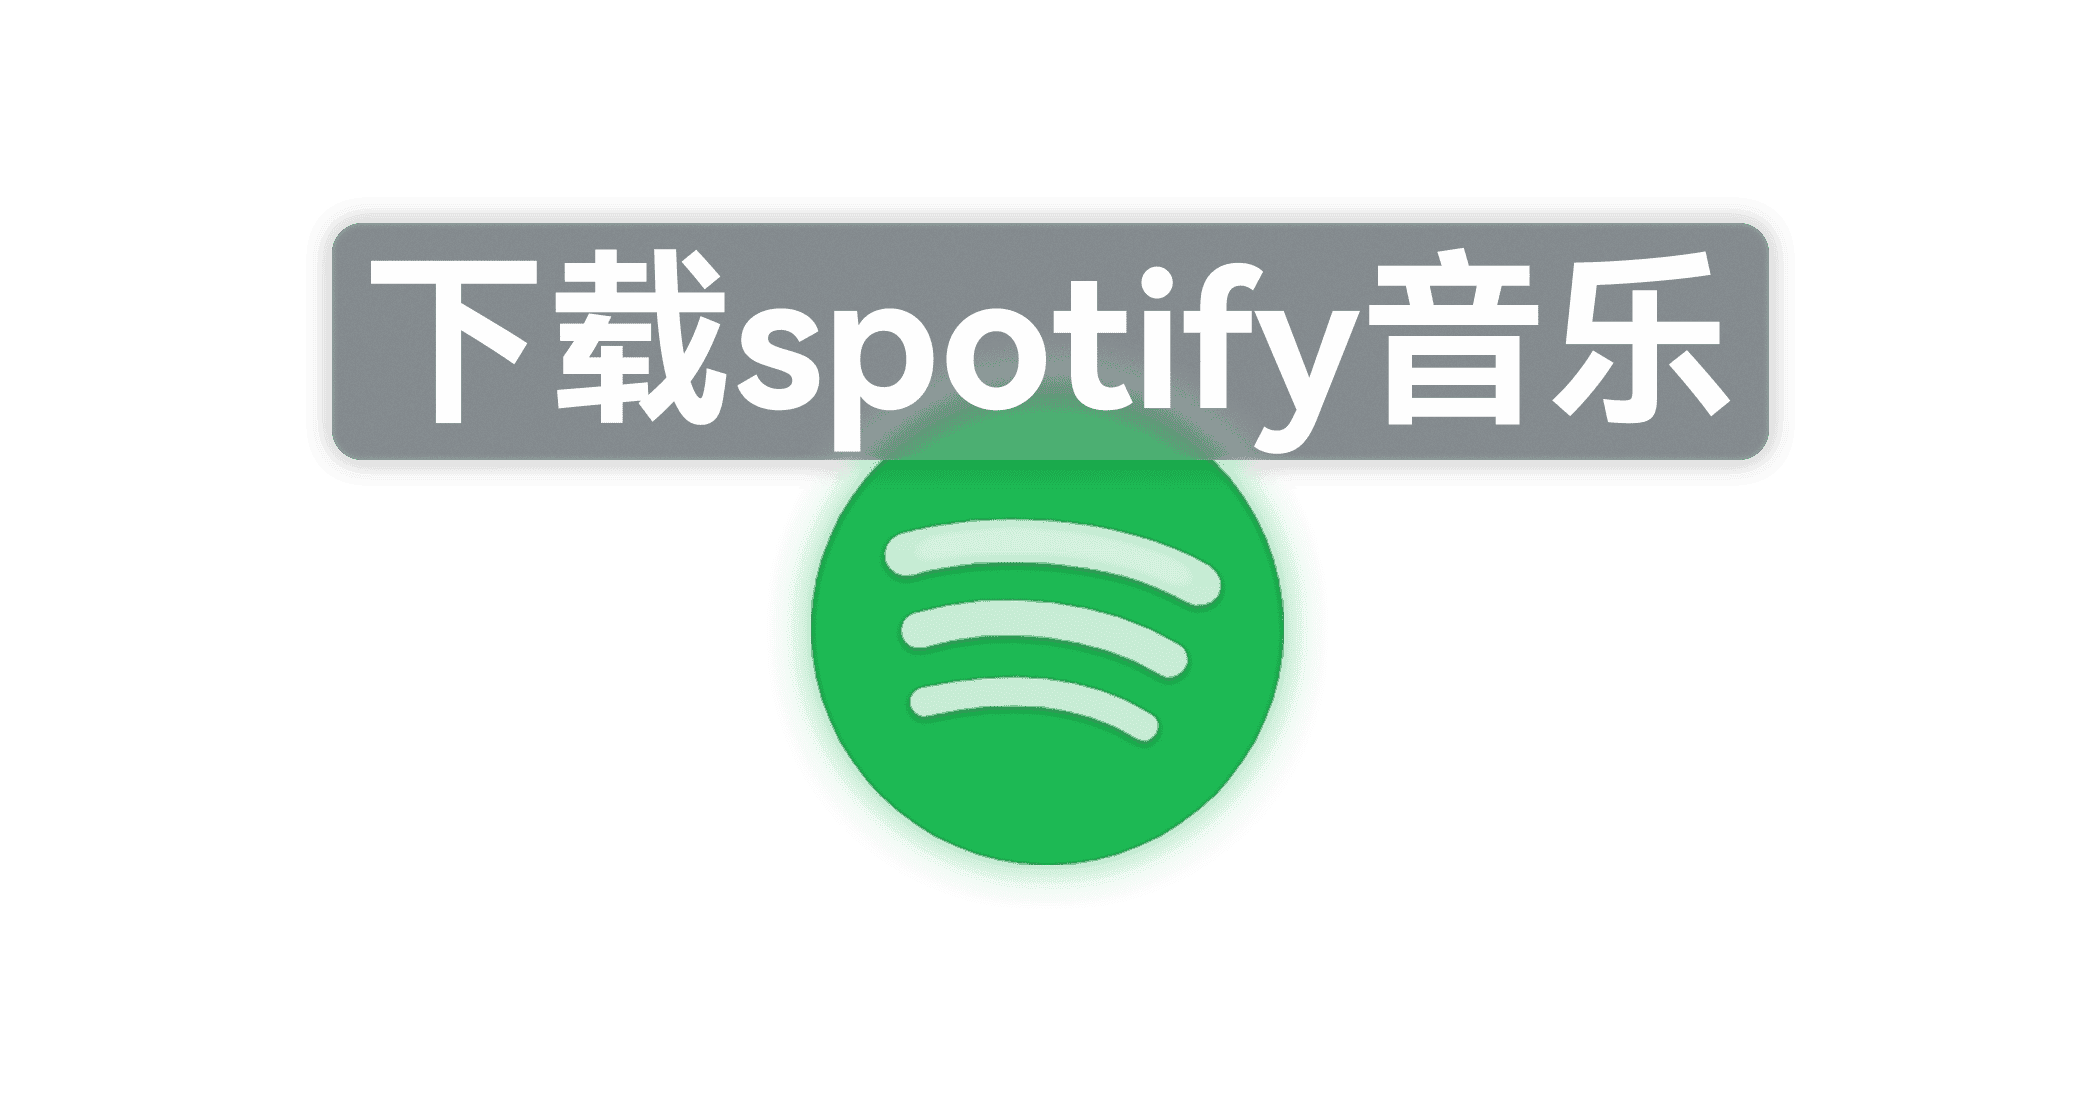 下载 Spotify 音乐-JACK小桔子的小屋